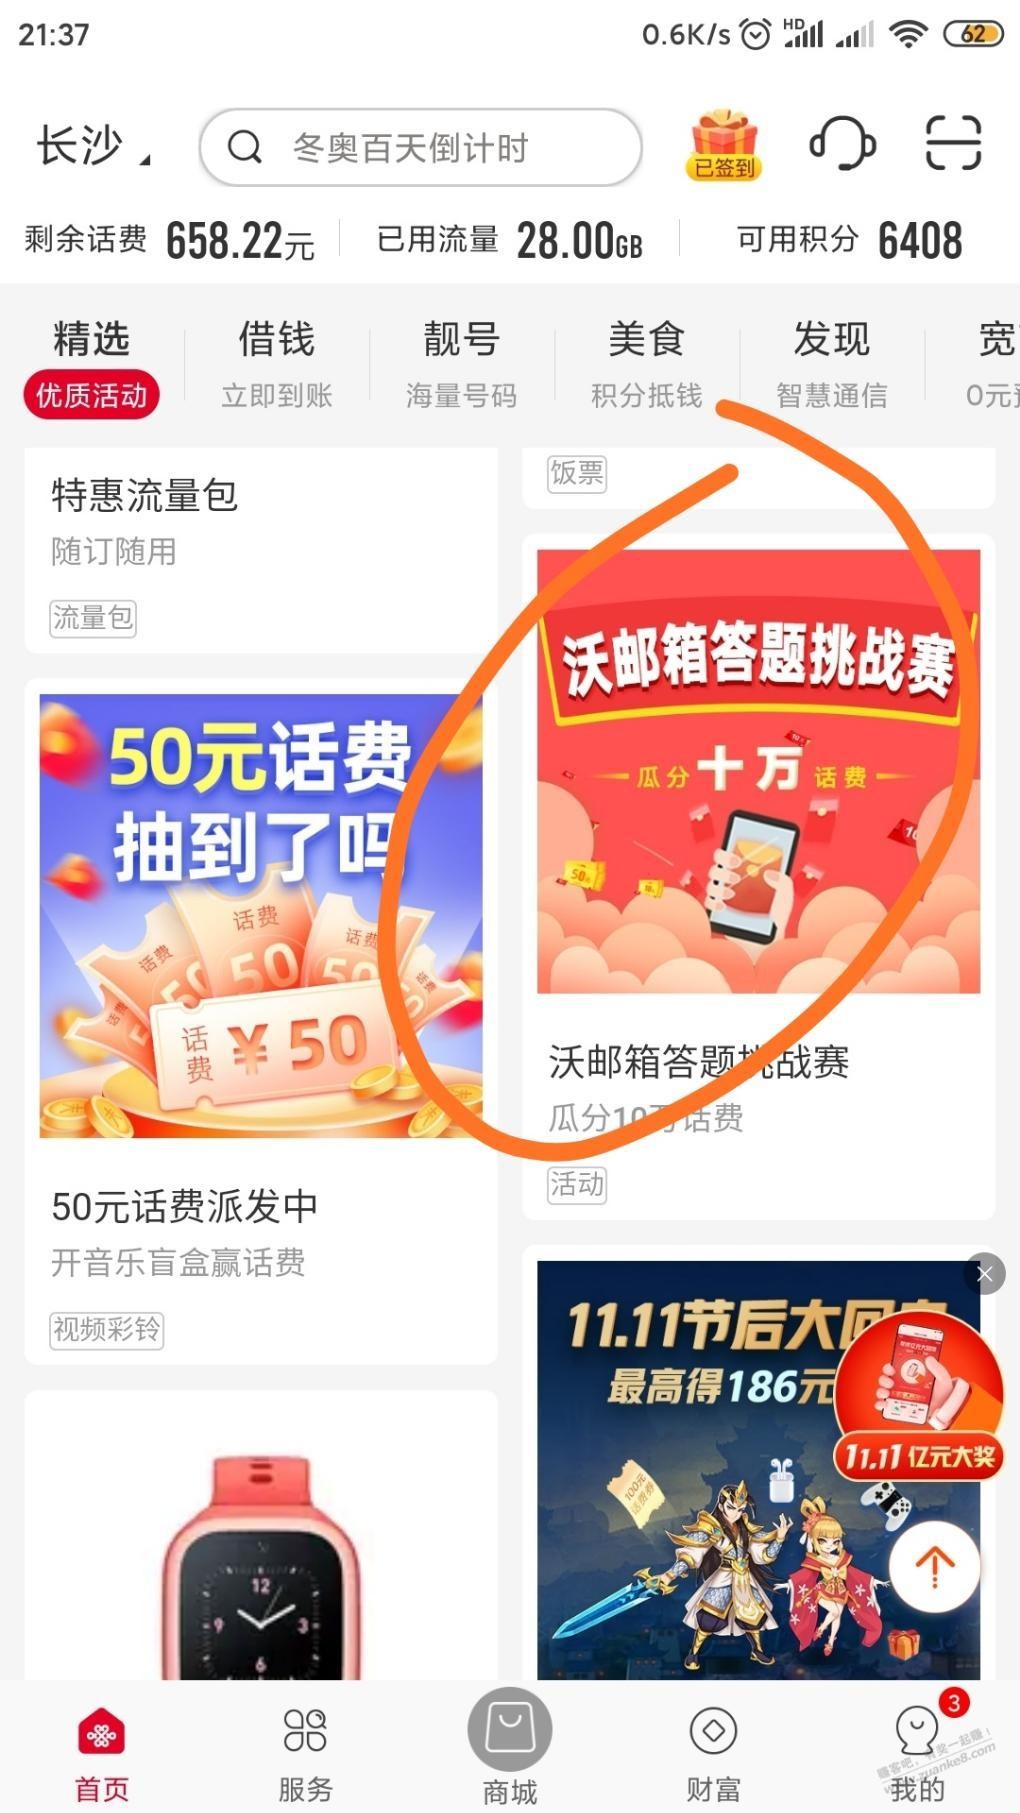 湖南联通app-1元话费随机-惠小助(52huixz.com)